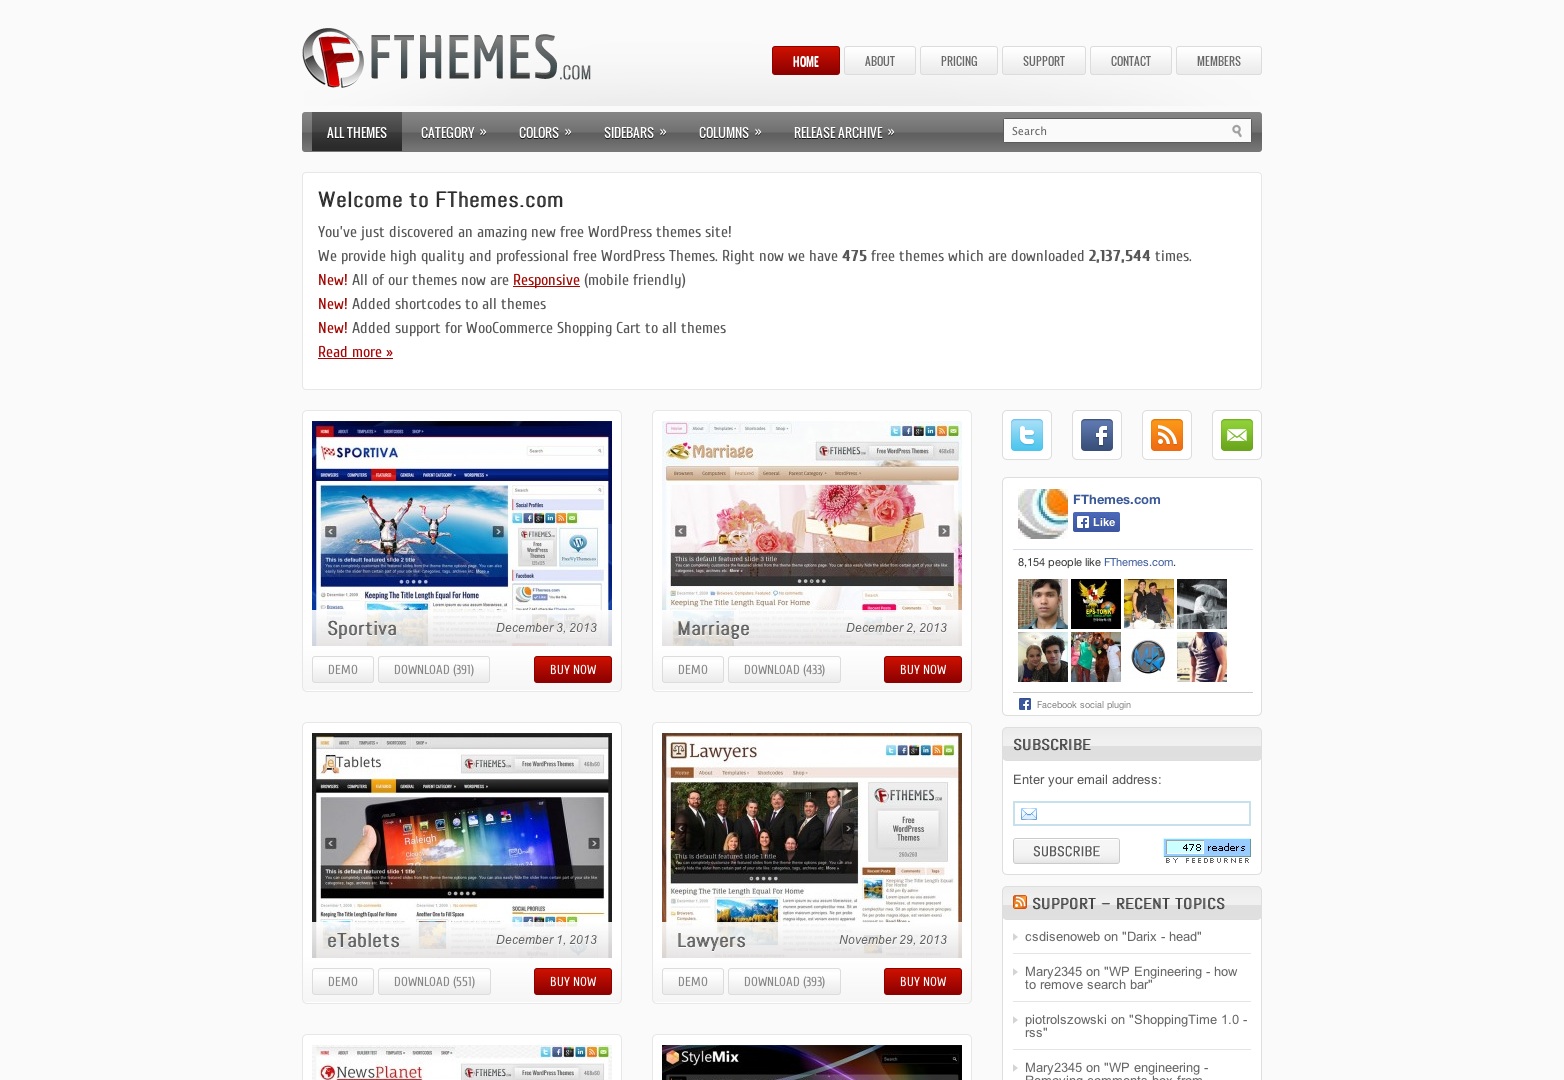 FThemes.com tarafından ücretsiz WordPress Temaları ve WordPress Şablonları